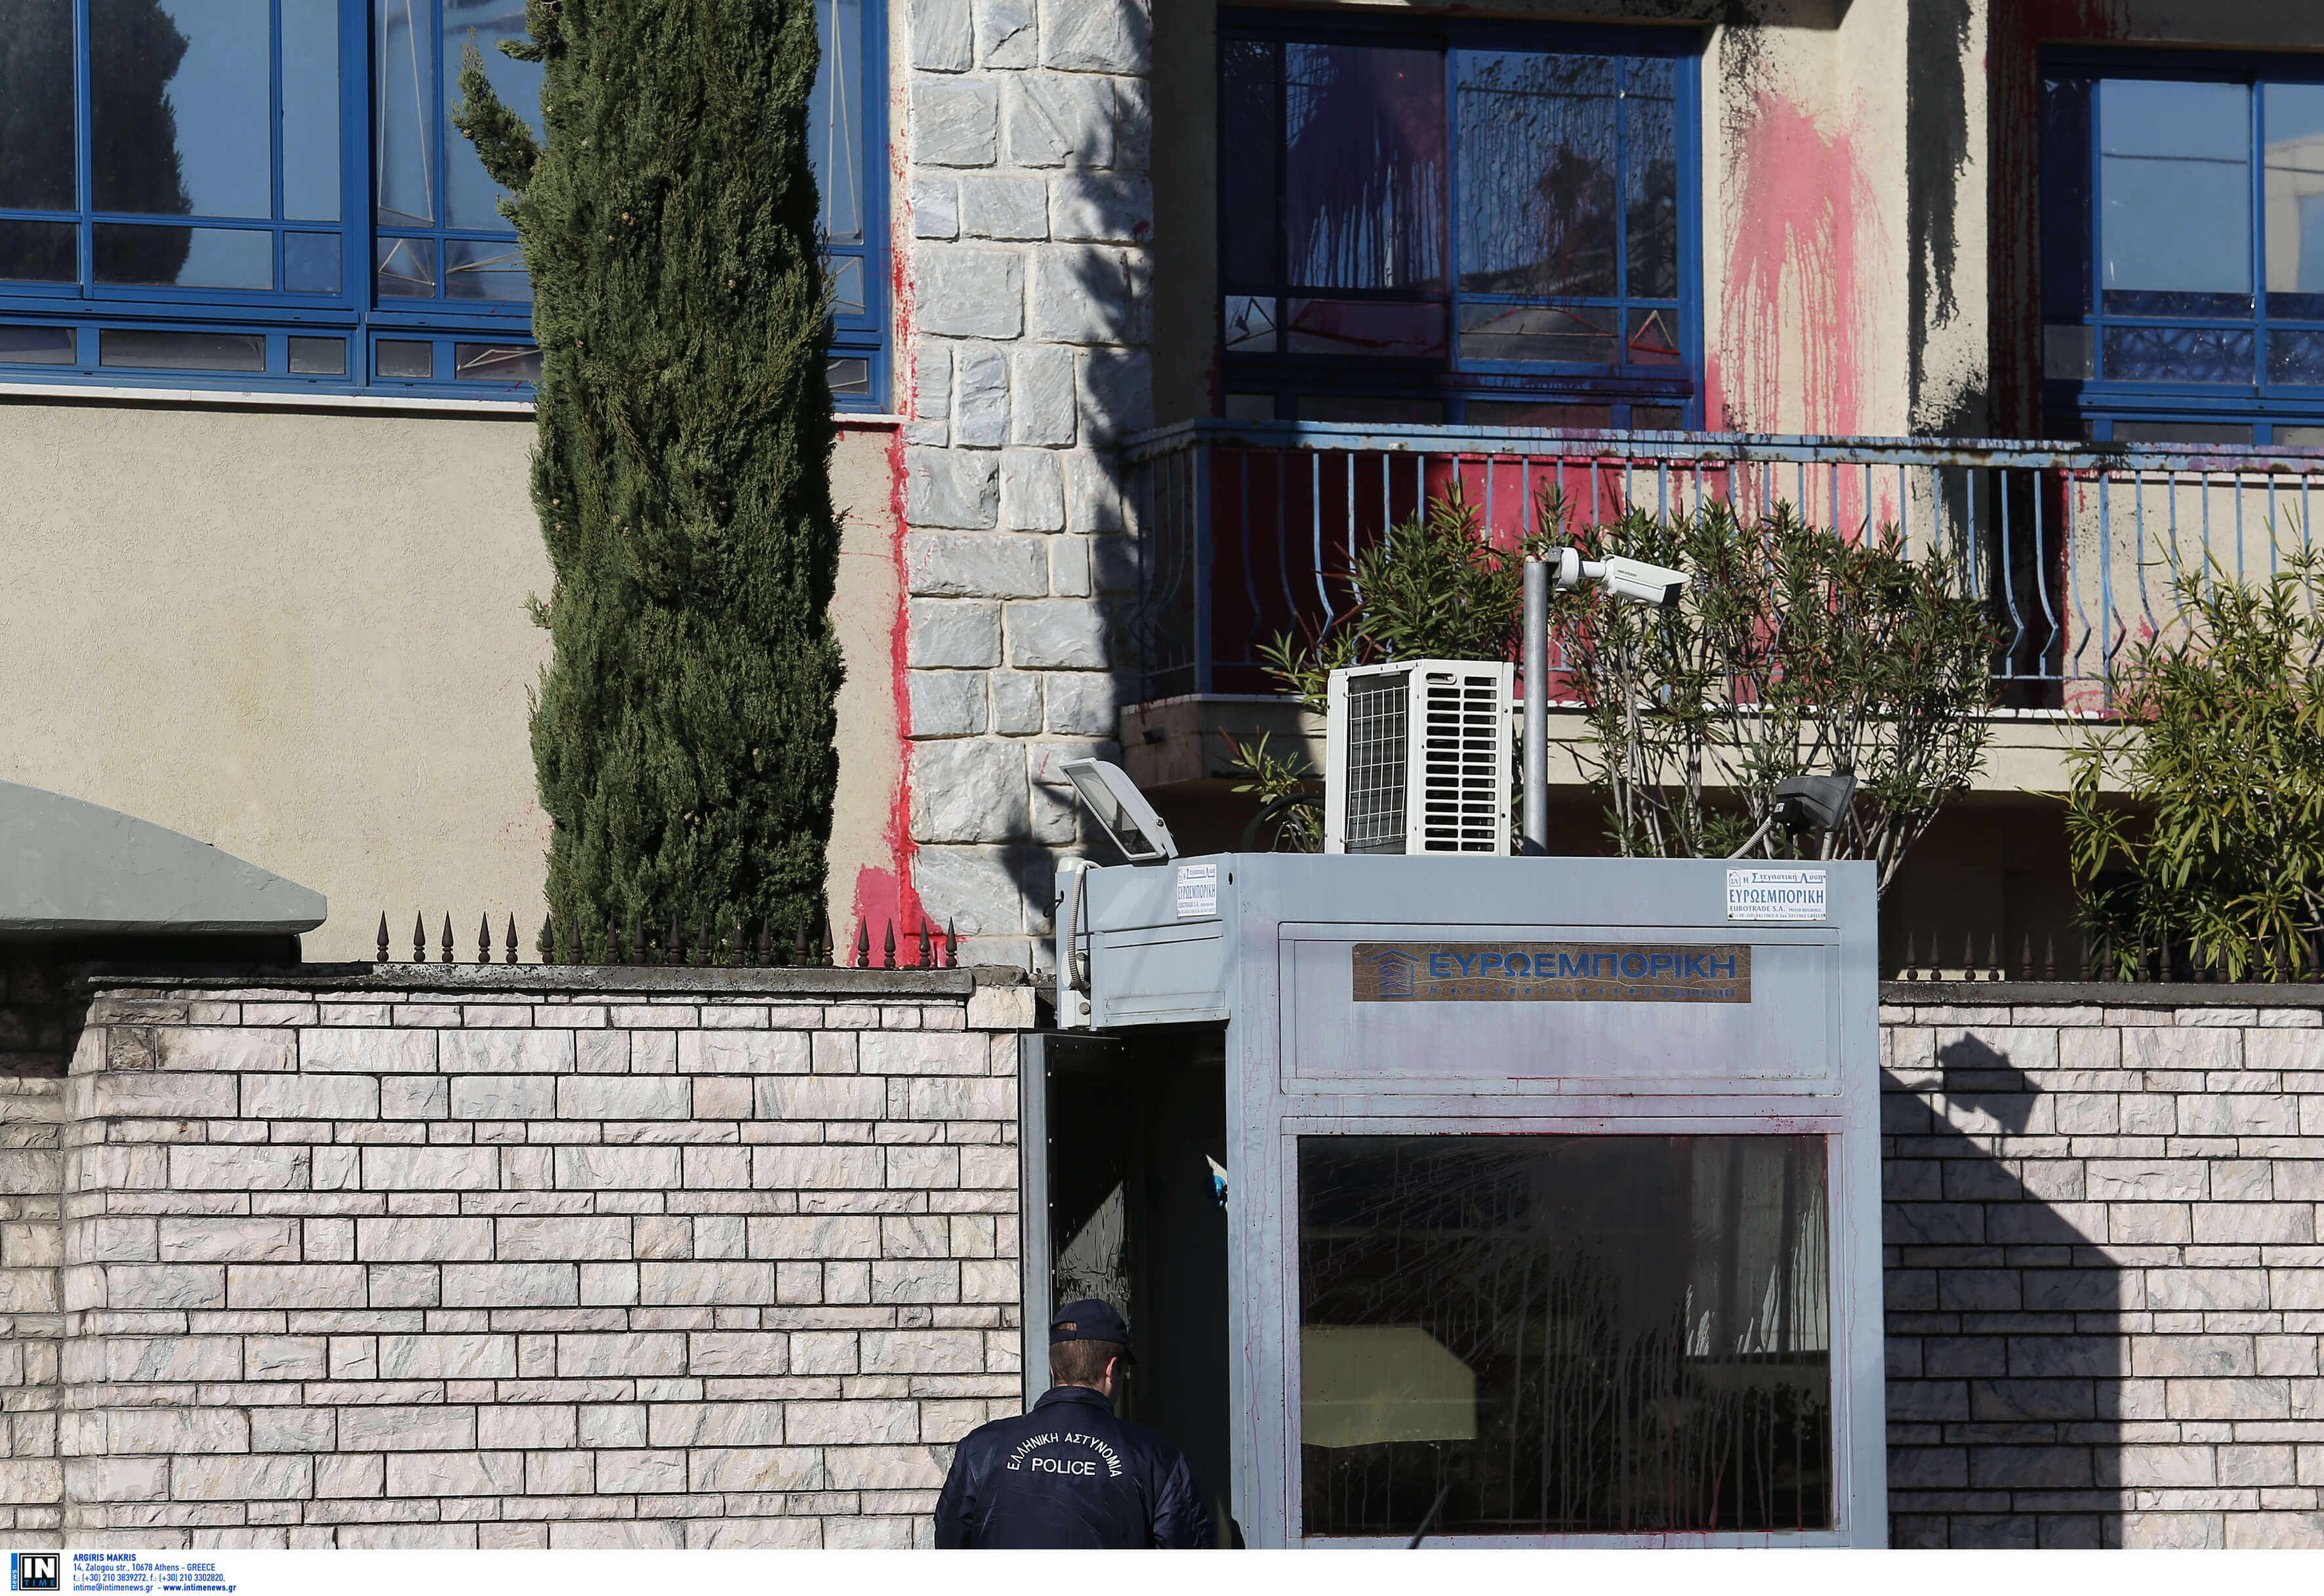 Ταυτοποιήθηκε μέλος του Ρουβίκωνα για την επίθεση στην πρεσβεία του Ισραήλ